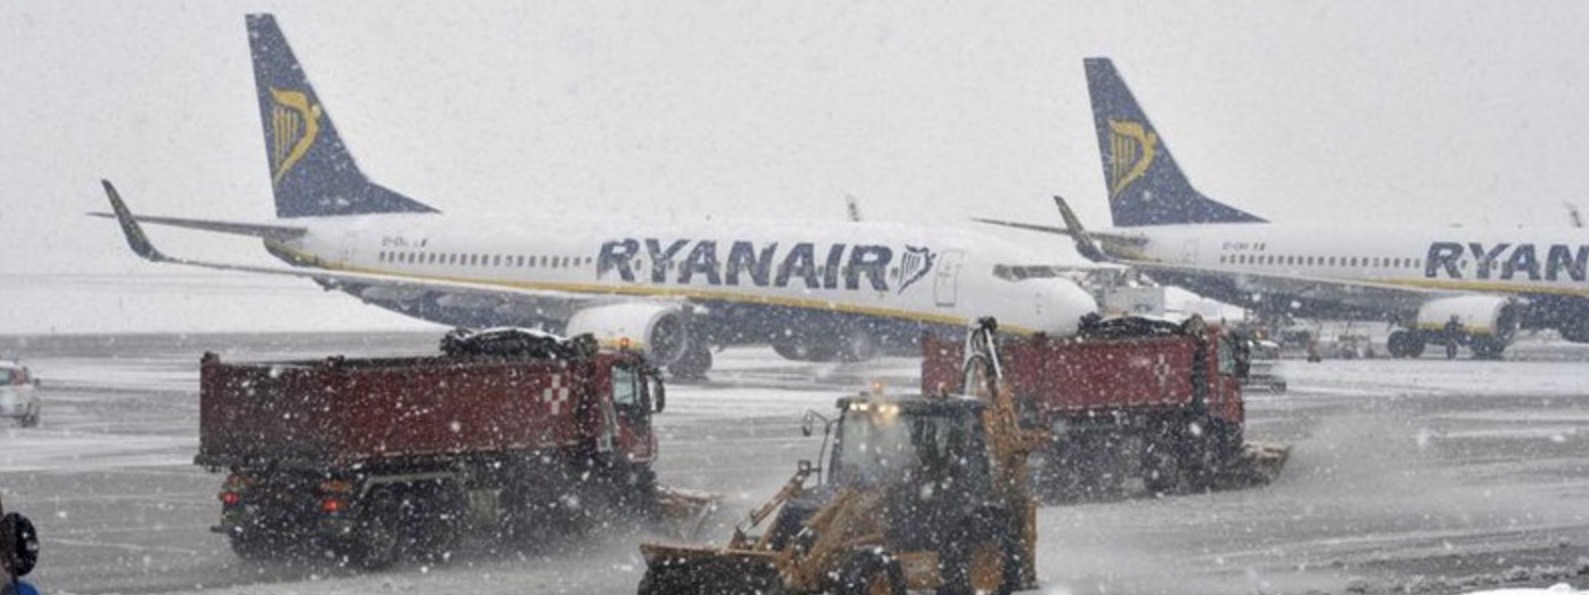 Aeroporto di Capodichino – Volo in ritardo per neve: ecco la mia storia